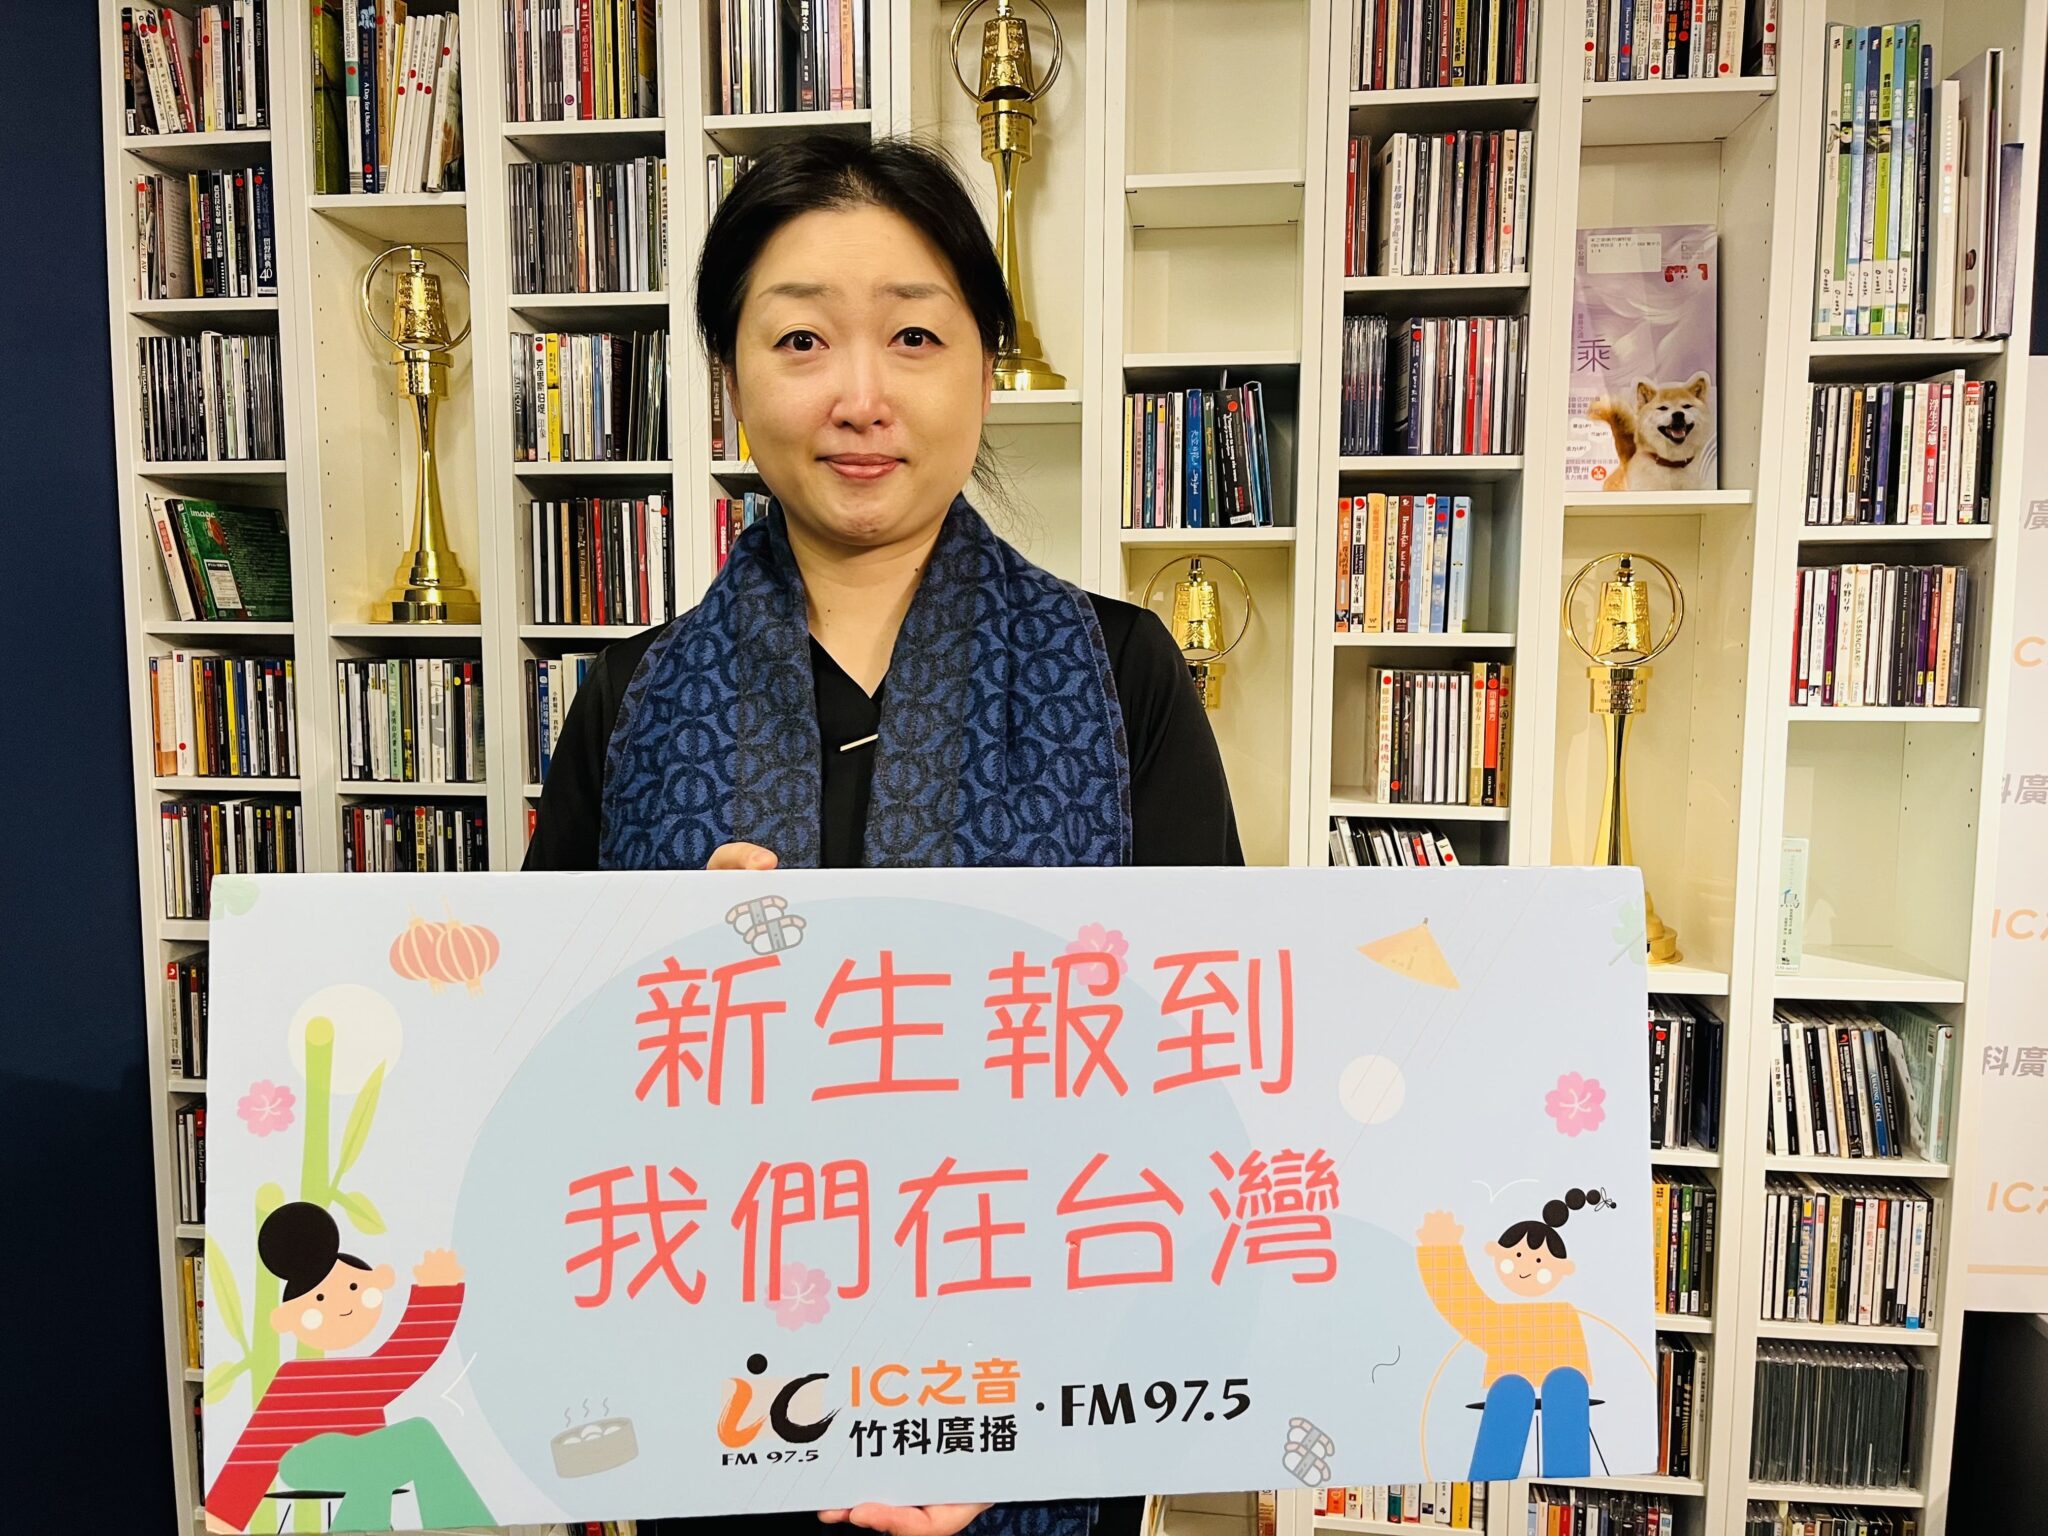 Khi còn học đại học, một giáo sư đã từng nói với cô rằng "thế kỷ 21 sẽ là thế kỷ của người Hoa", chính vì vạy cô đã quyết định đến Đài Loan để phát triển sự nghiệp. (Nguồn ảnh: nhân vật cung cấp)